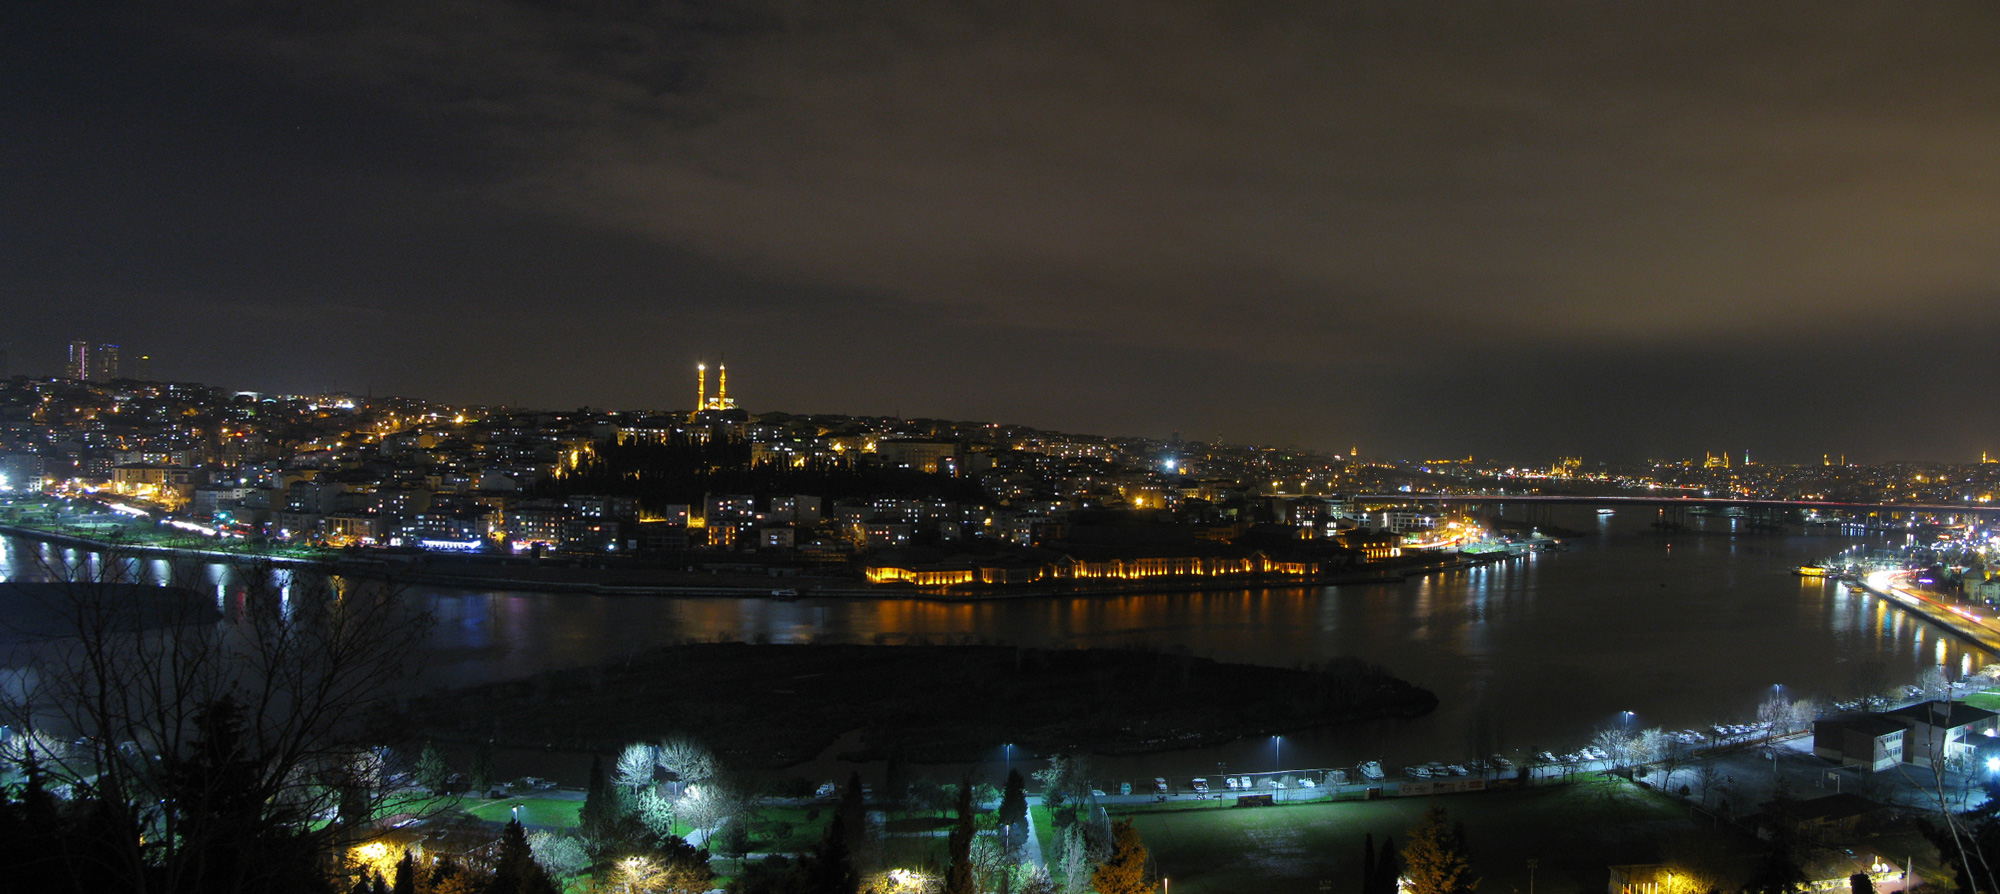 Turkey Istanbul Pierre Loti Panorama night